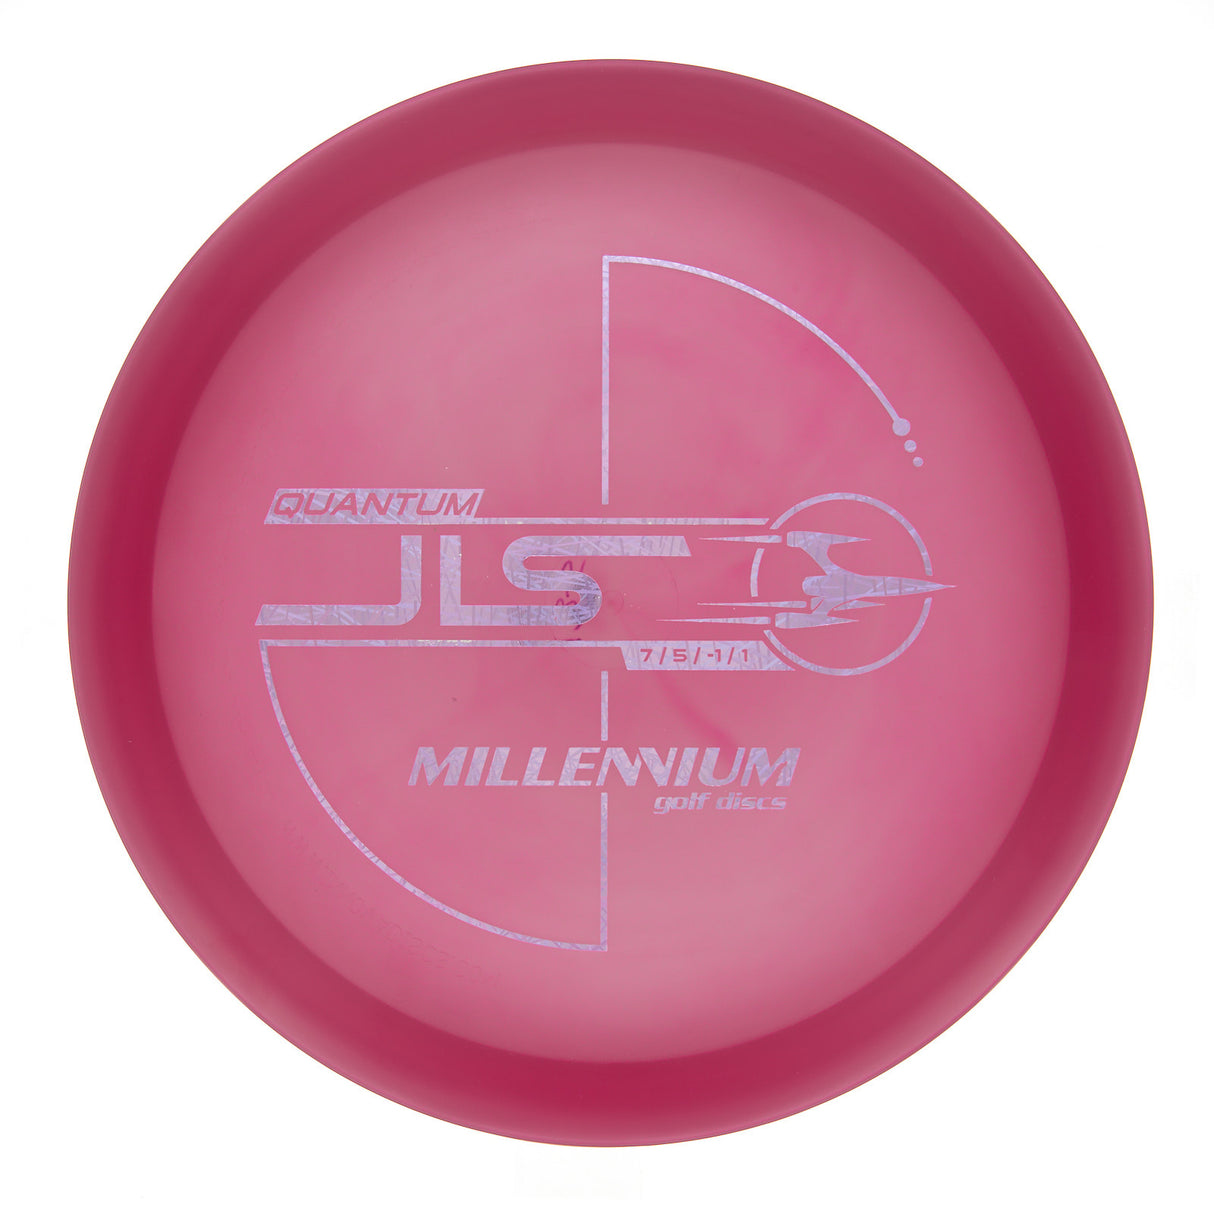 Millennium JLS - Quantum  174g | Style 0001